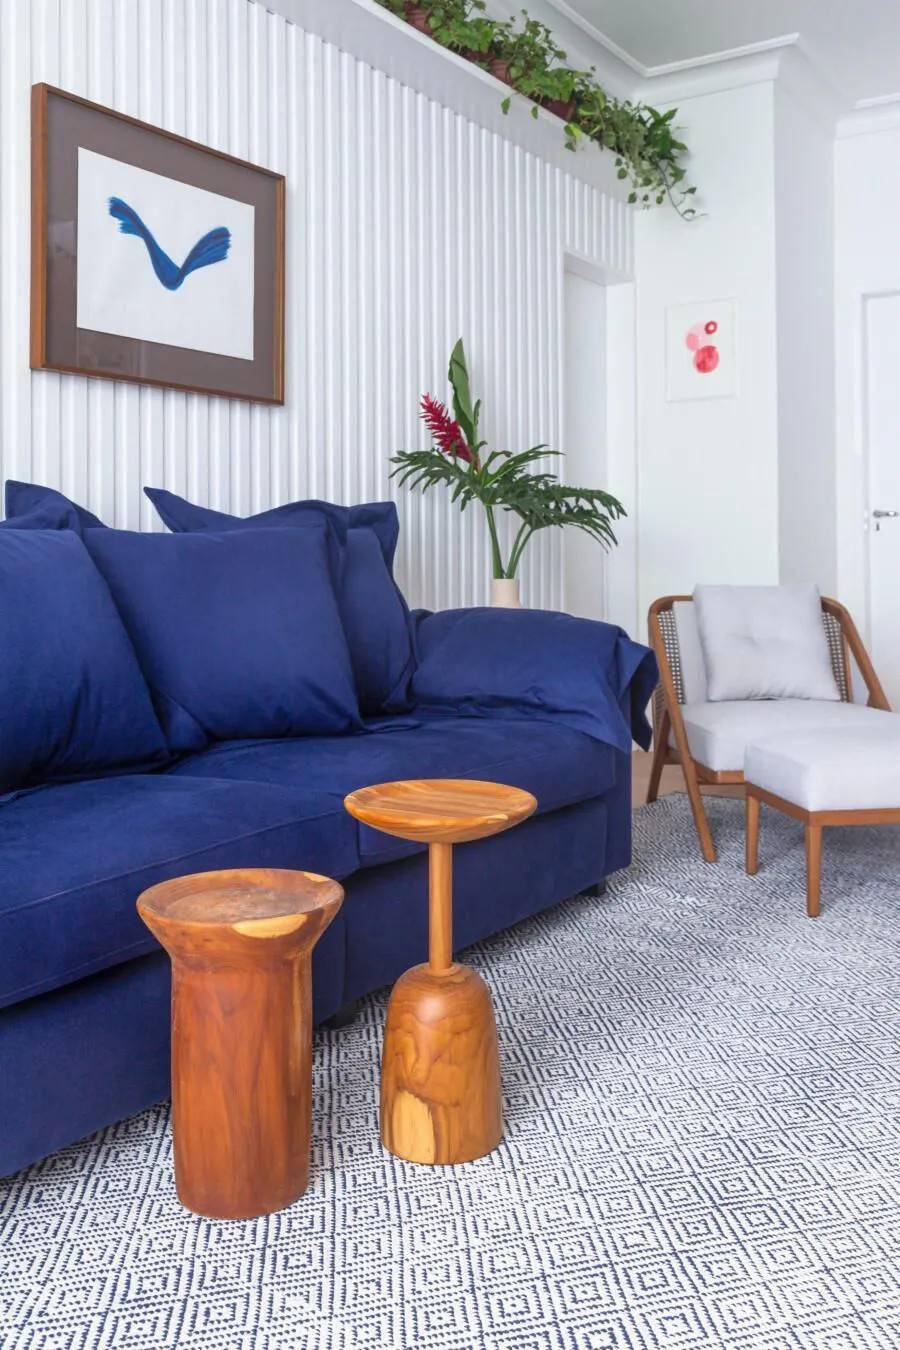 而是用一个迷你的小圆墩替代,宝蓝色的沙发与白色的竖条纹沙发背景墙